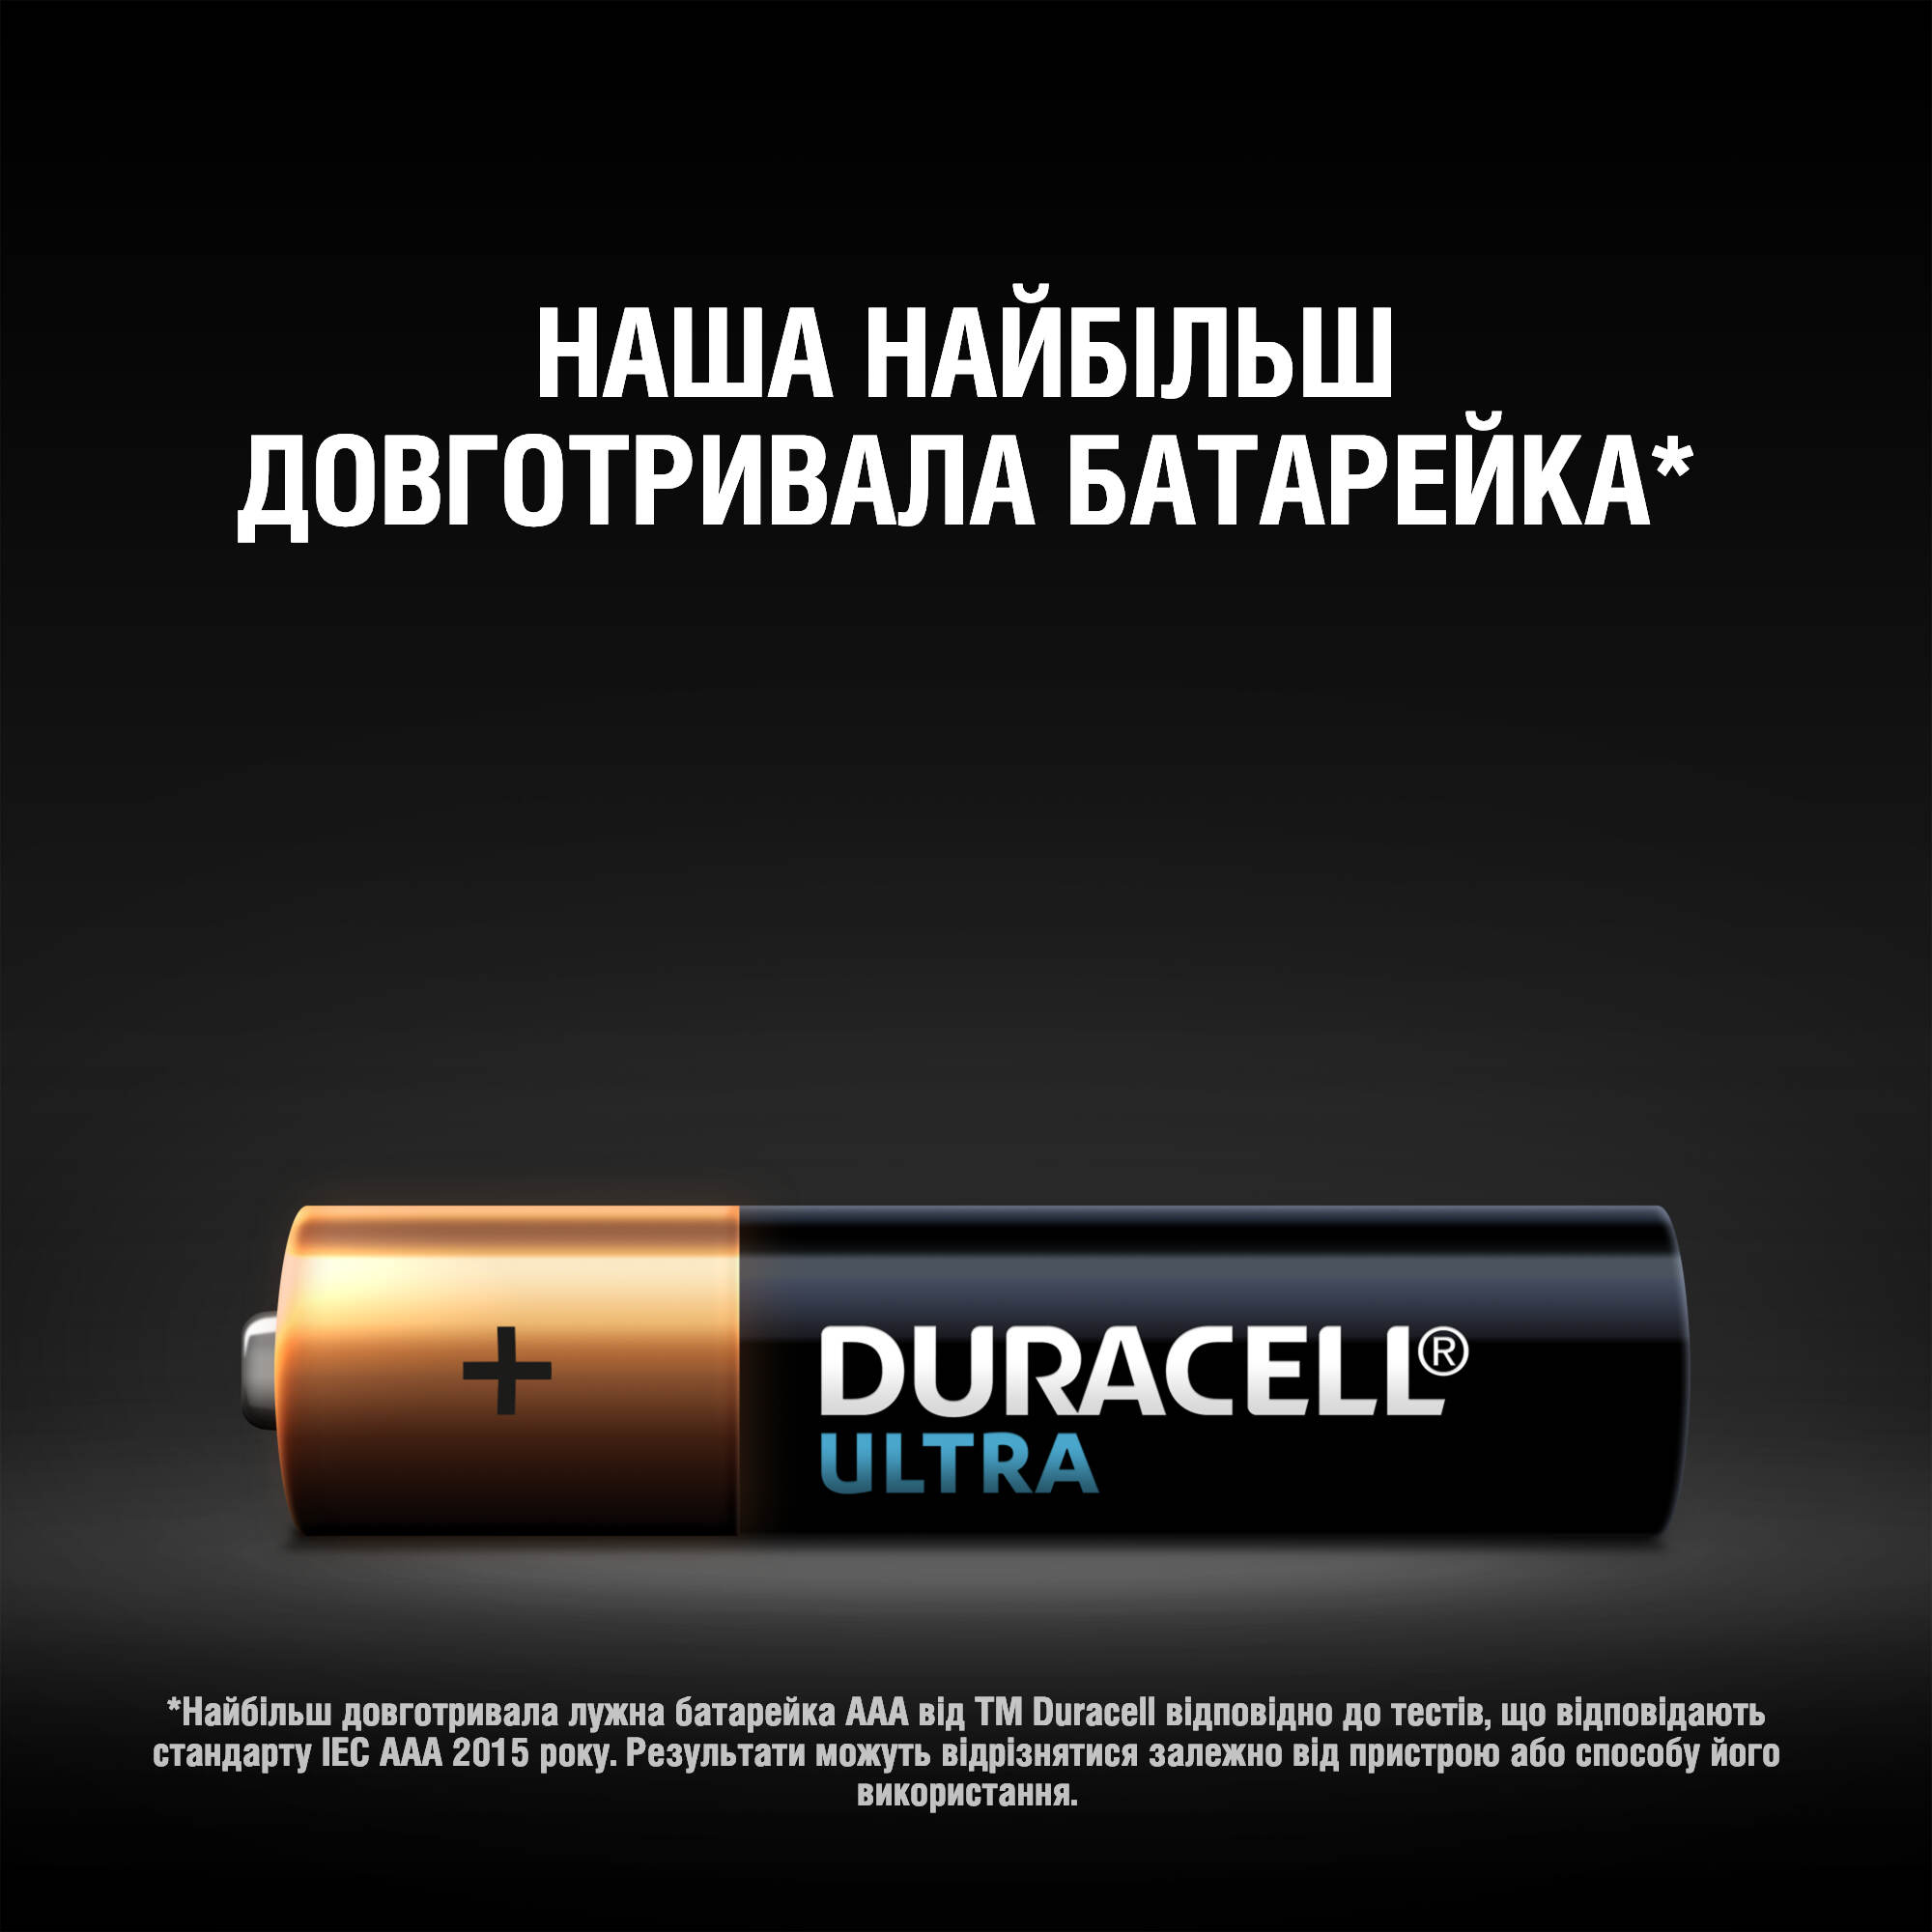 Щелочные батарейки мизинчиковые Duracell Ultra 1,5 V AAA LR03/MX2400, 4 шт. (5004806) - фото 6